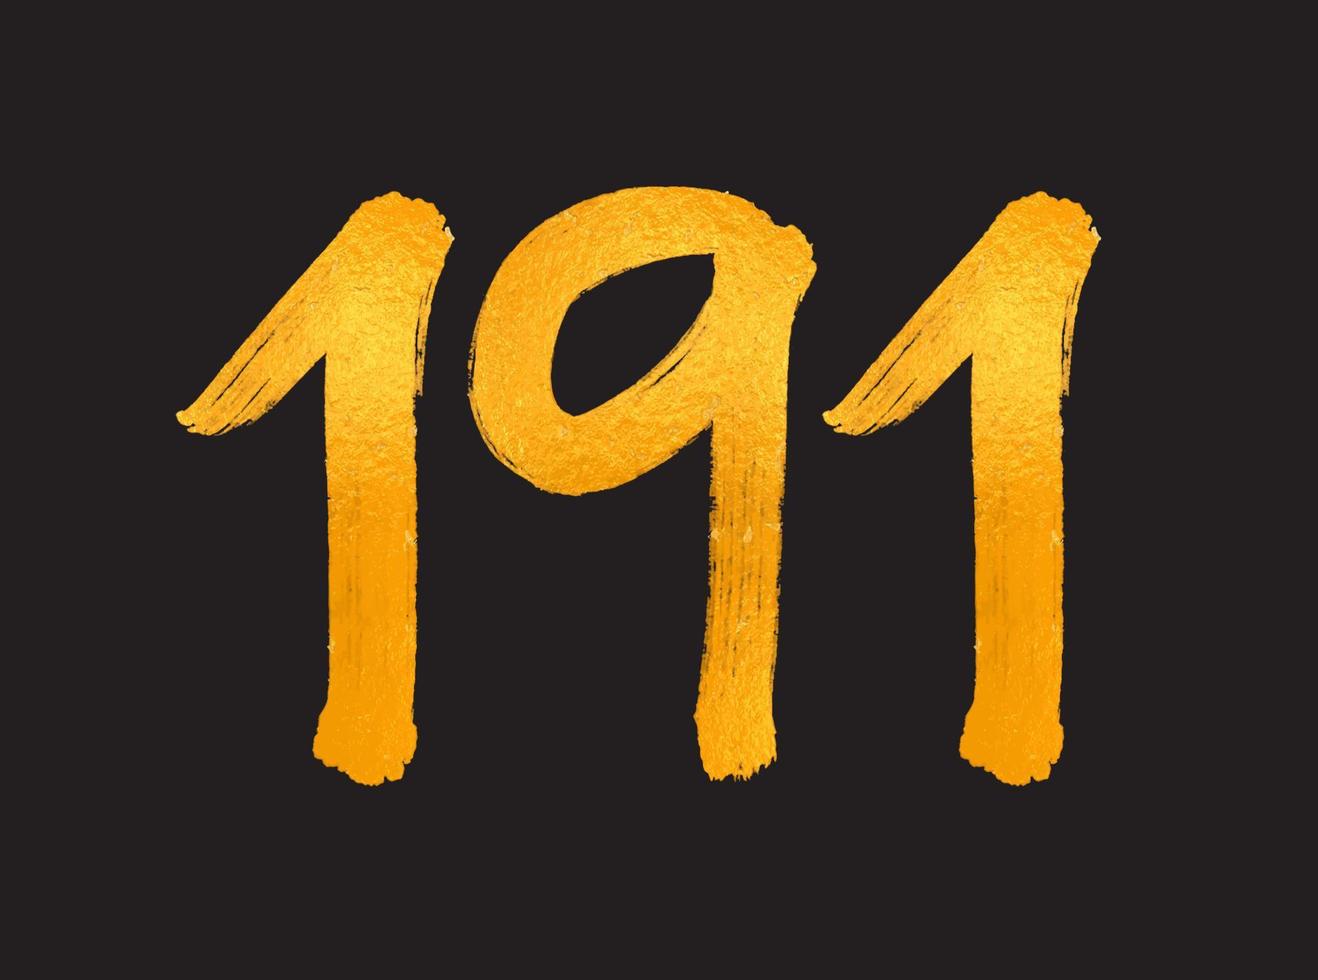 191 numero logo vettore illustrazione, 191 anni anniversario celebrazione vettore modello, 191° compleanno, oro lettering numeri spazzola disegno mano disegnato schizzo, numero logo design per Stampa, t camicia